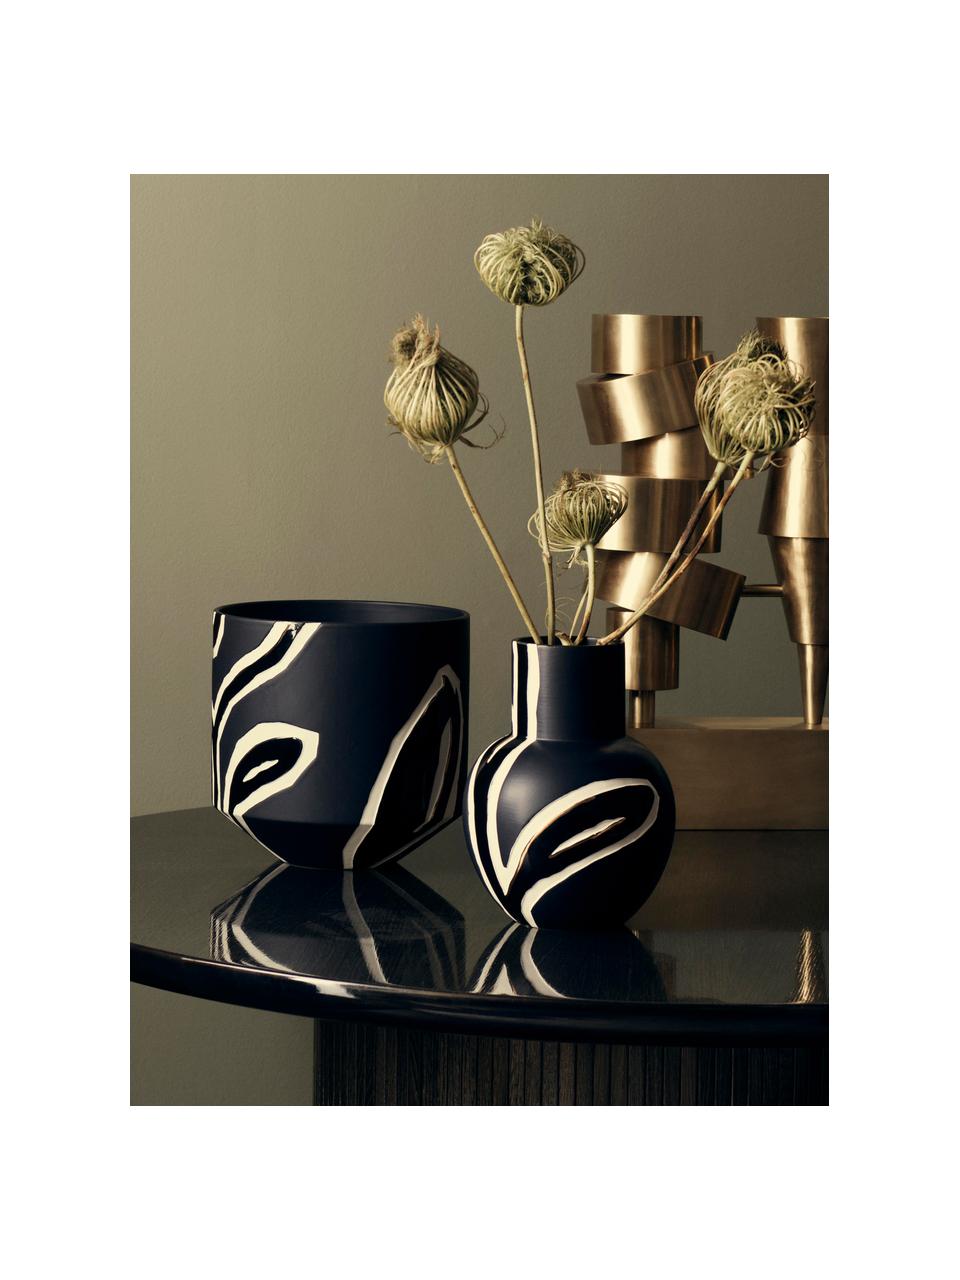 Handgefertigte Design-Vase Fiora, Porzellan, Blau-Schwarz, Creme, Goldfarben, 19 x 25 cm